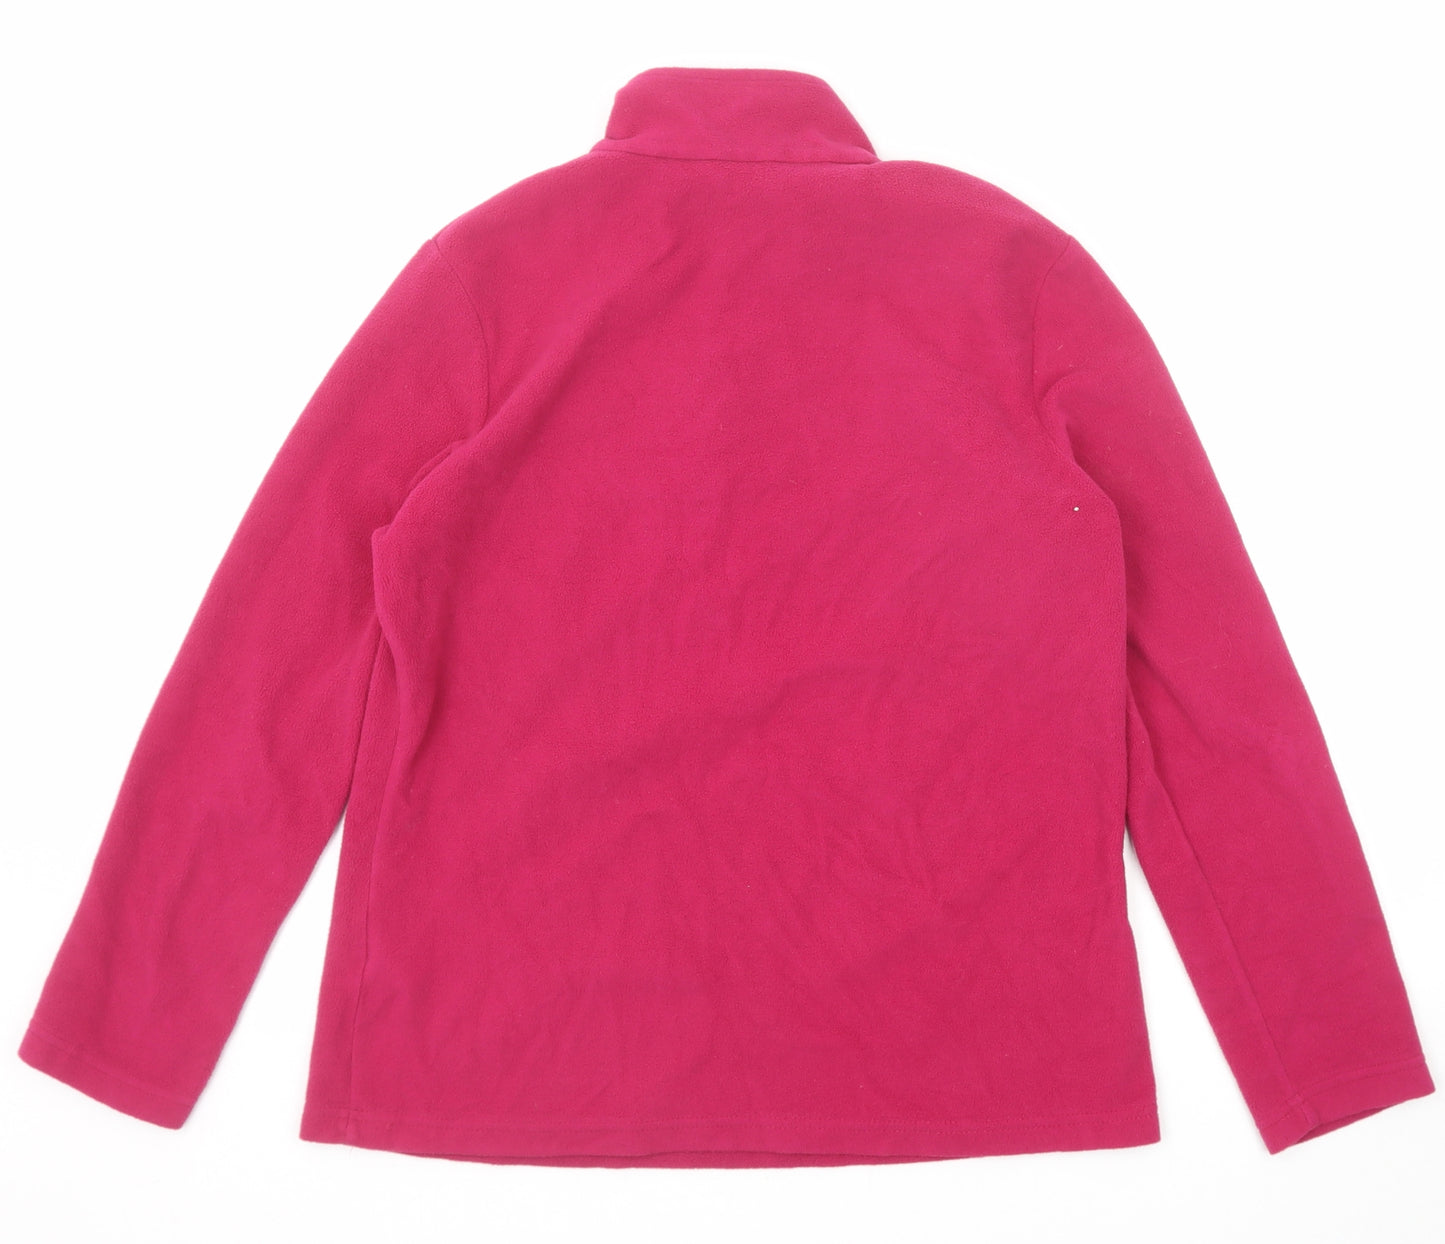 Regatta Womens Pink Polyester Pullover Sweatshirt Size 14 Zip